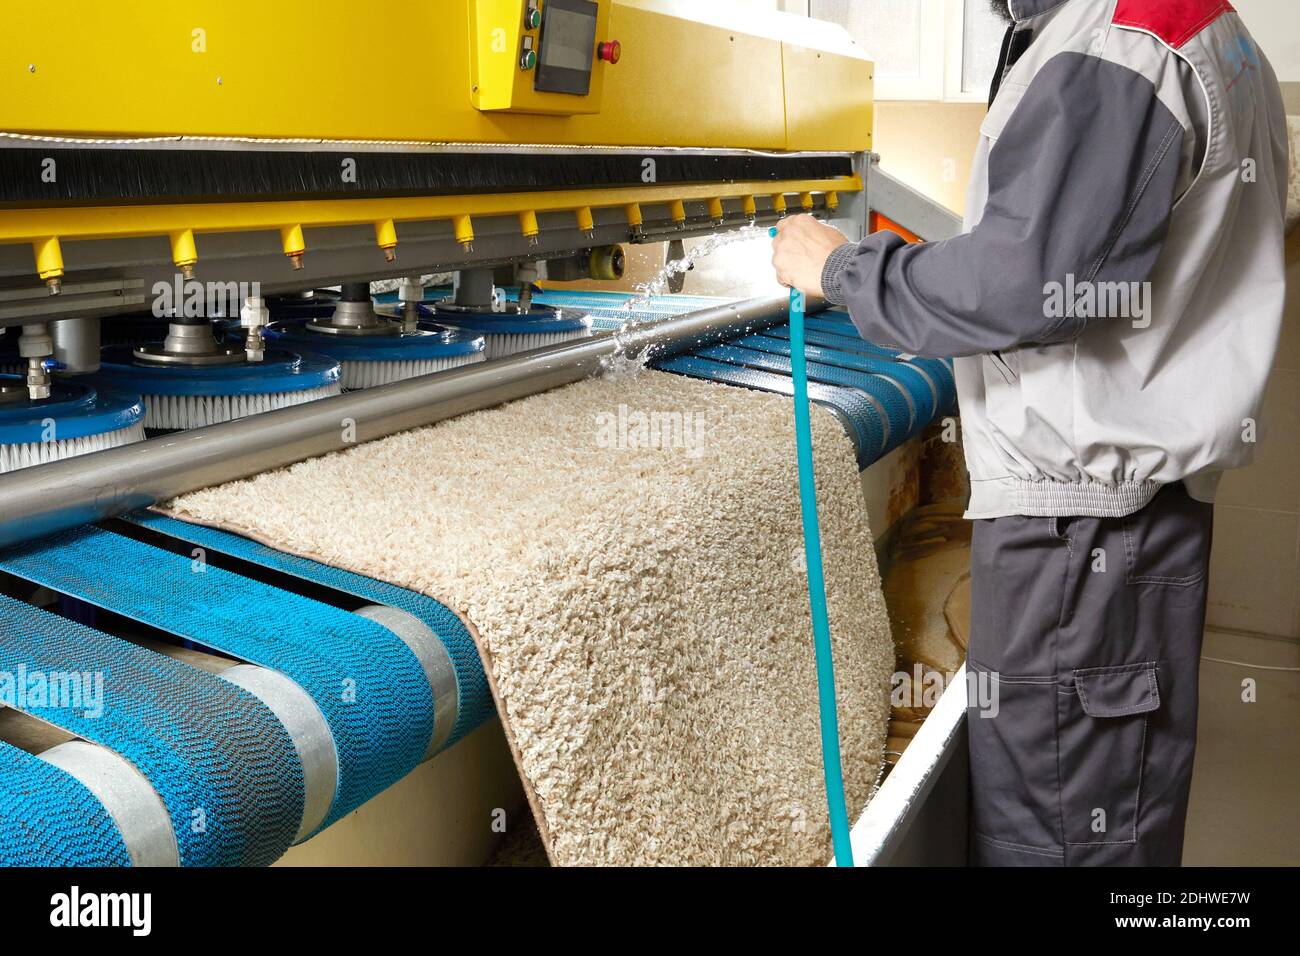 Männlicher Arbeiter Reinigung Teppich auf automatische Waschmaschine  Ausrüstung und Trockner im Waschraum. Professioneller Waschservice  Stockfotografie - Alamy